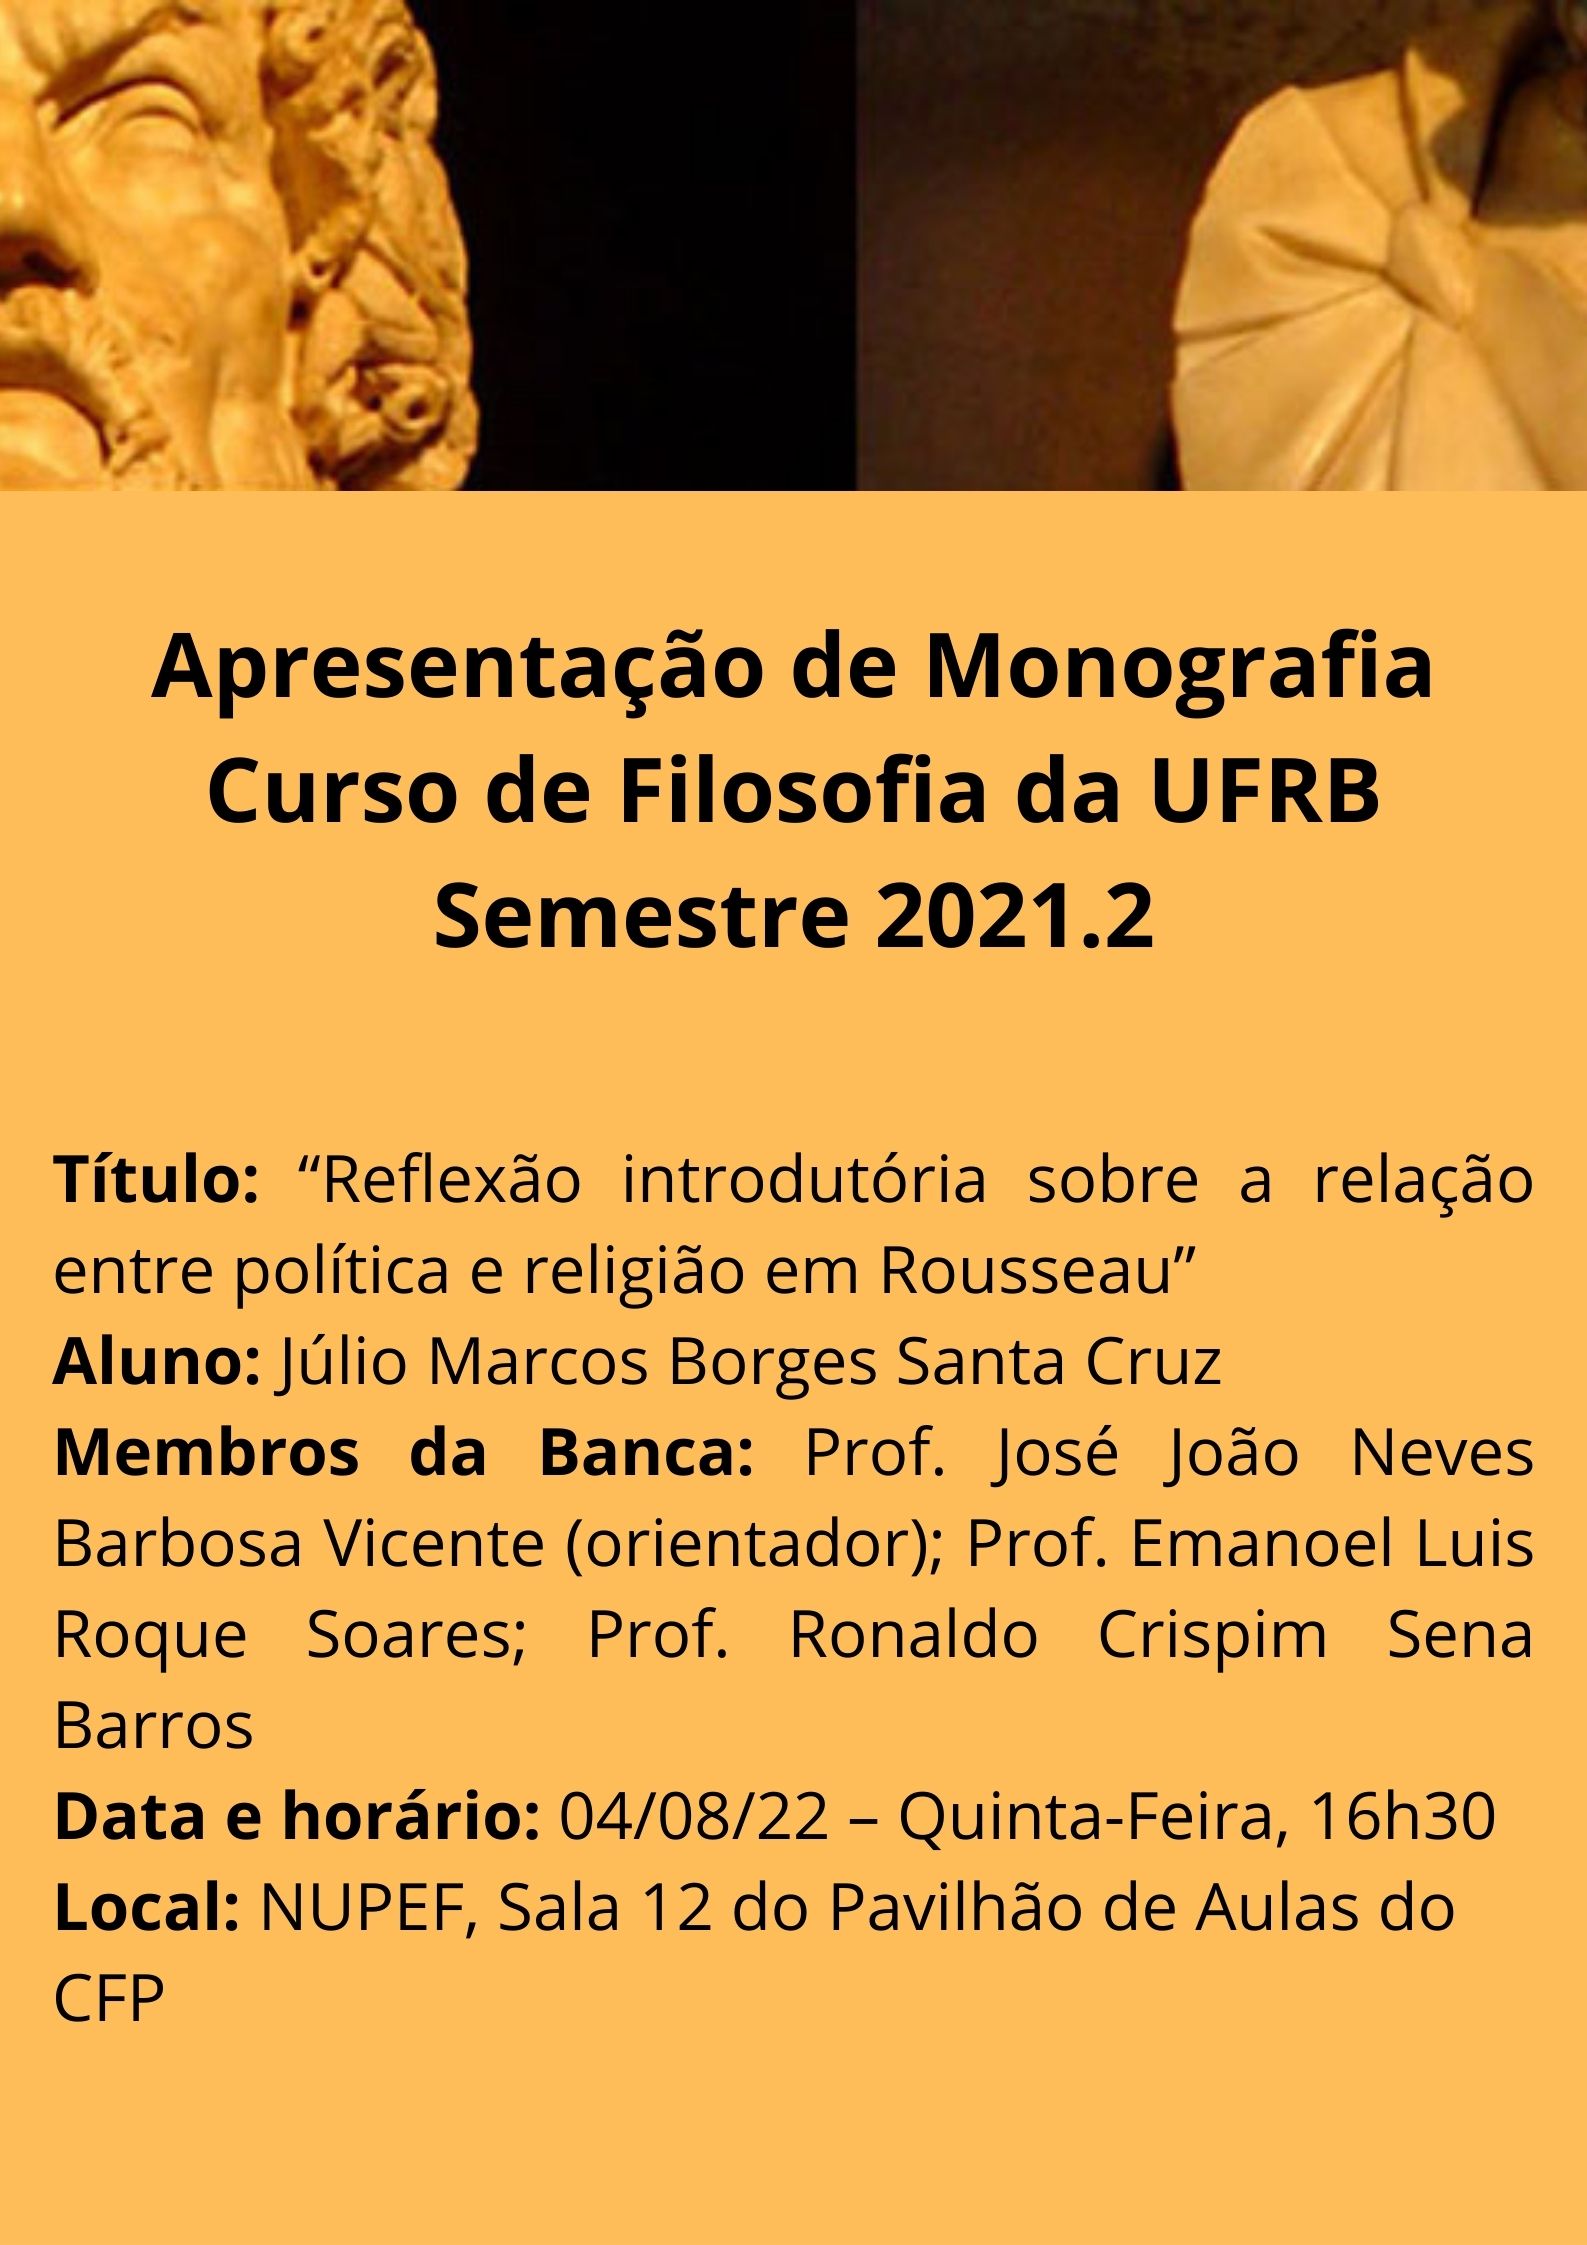 Apresentação das monografias do Curso de Filosofia da UFRB Semestre 2021.2 Julio